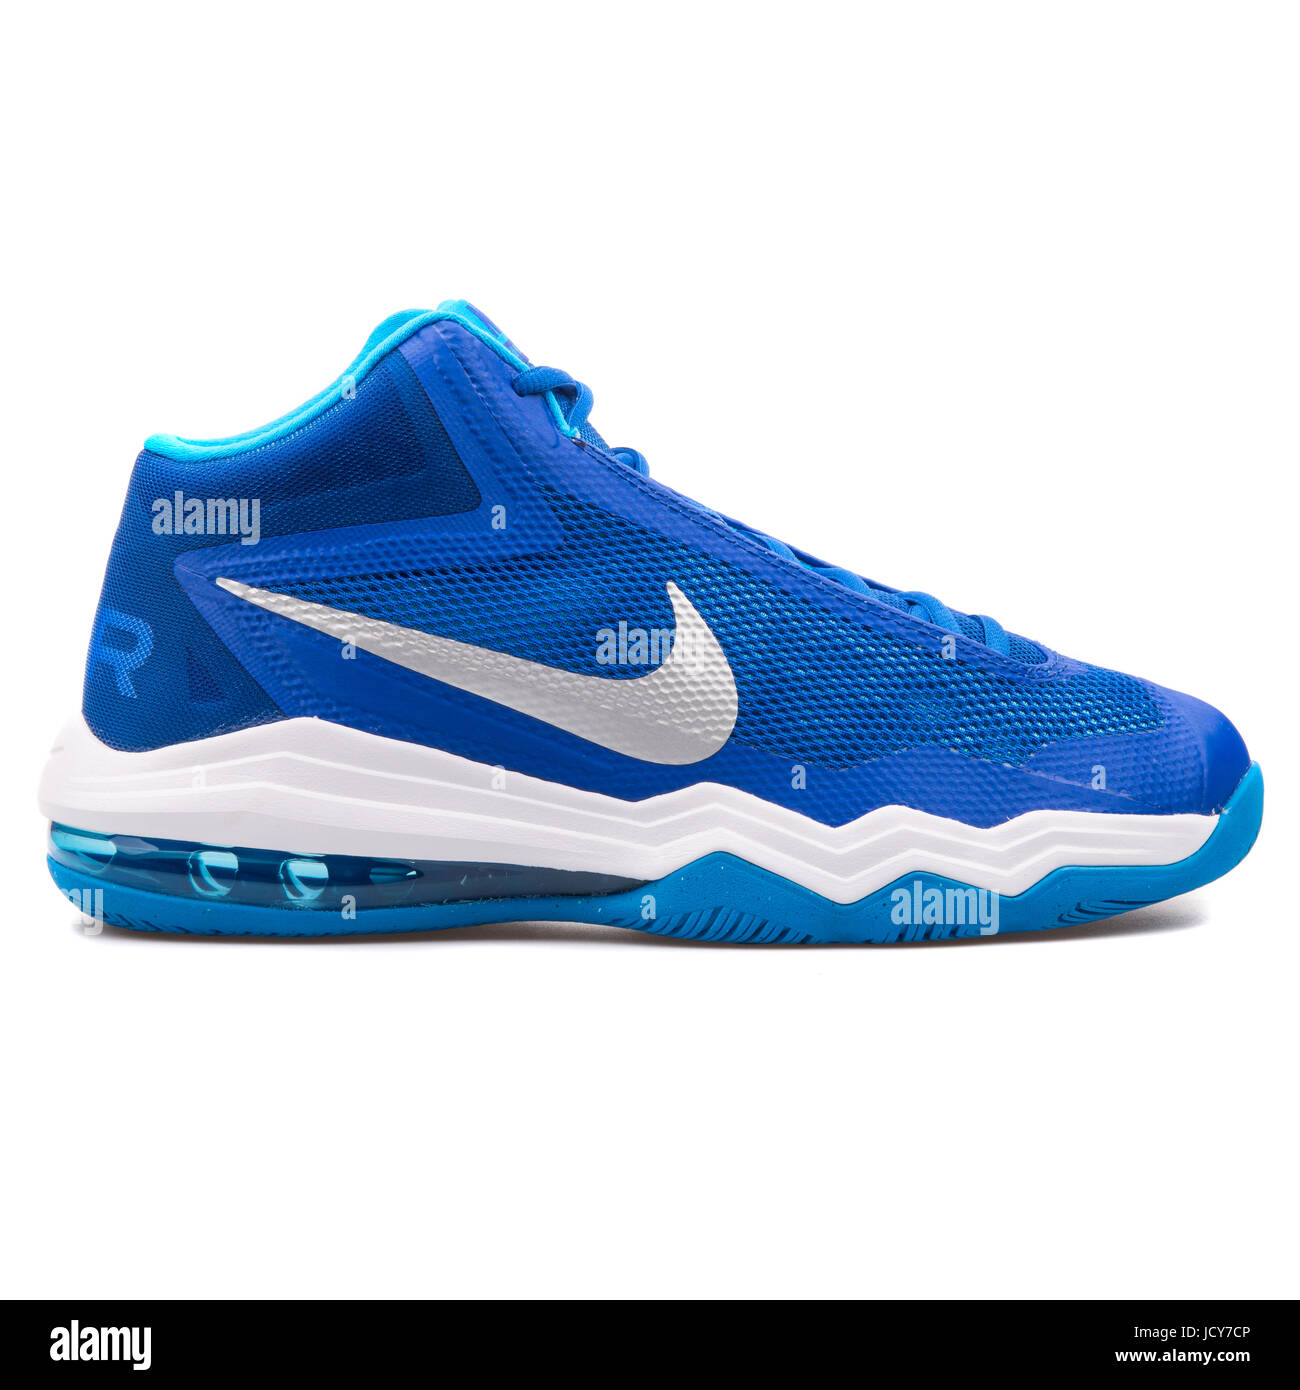 Nike Max TB Unisex azul y blanco zapatillas de baloncesto - 749166-403 Fotografía de stock - Alamy